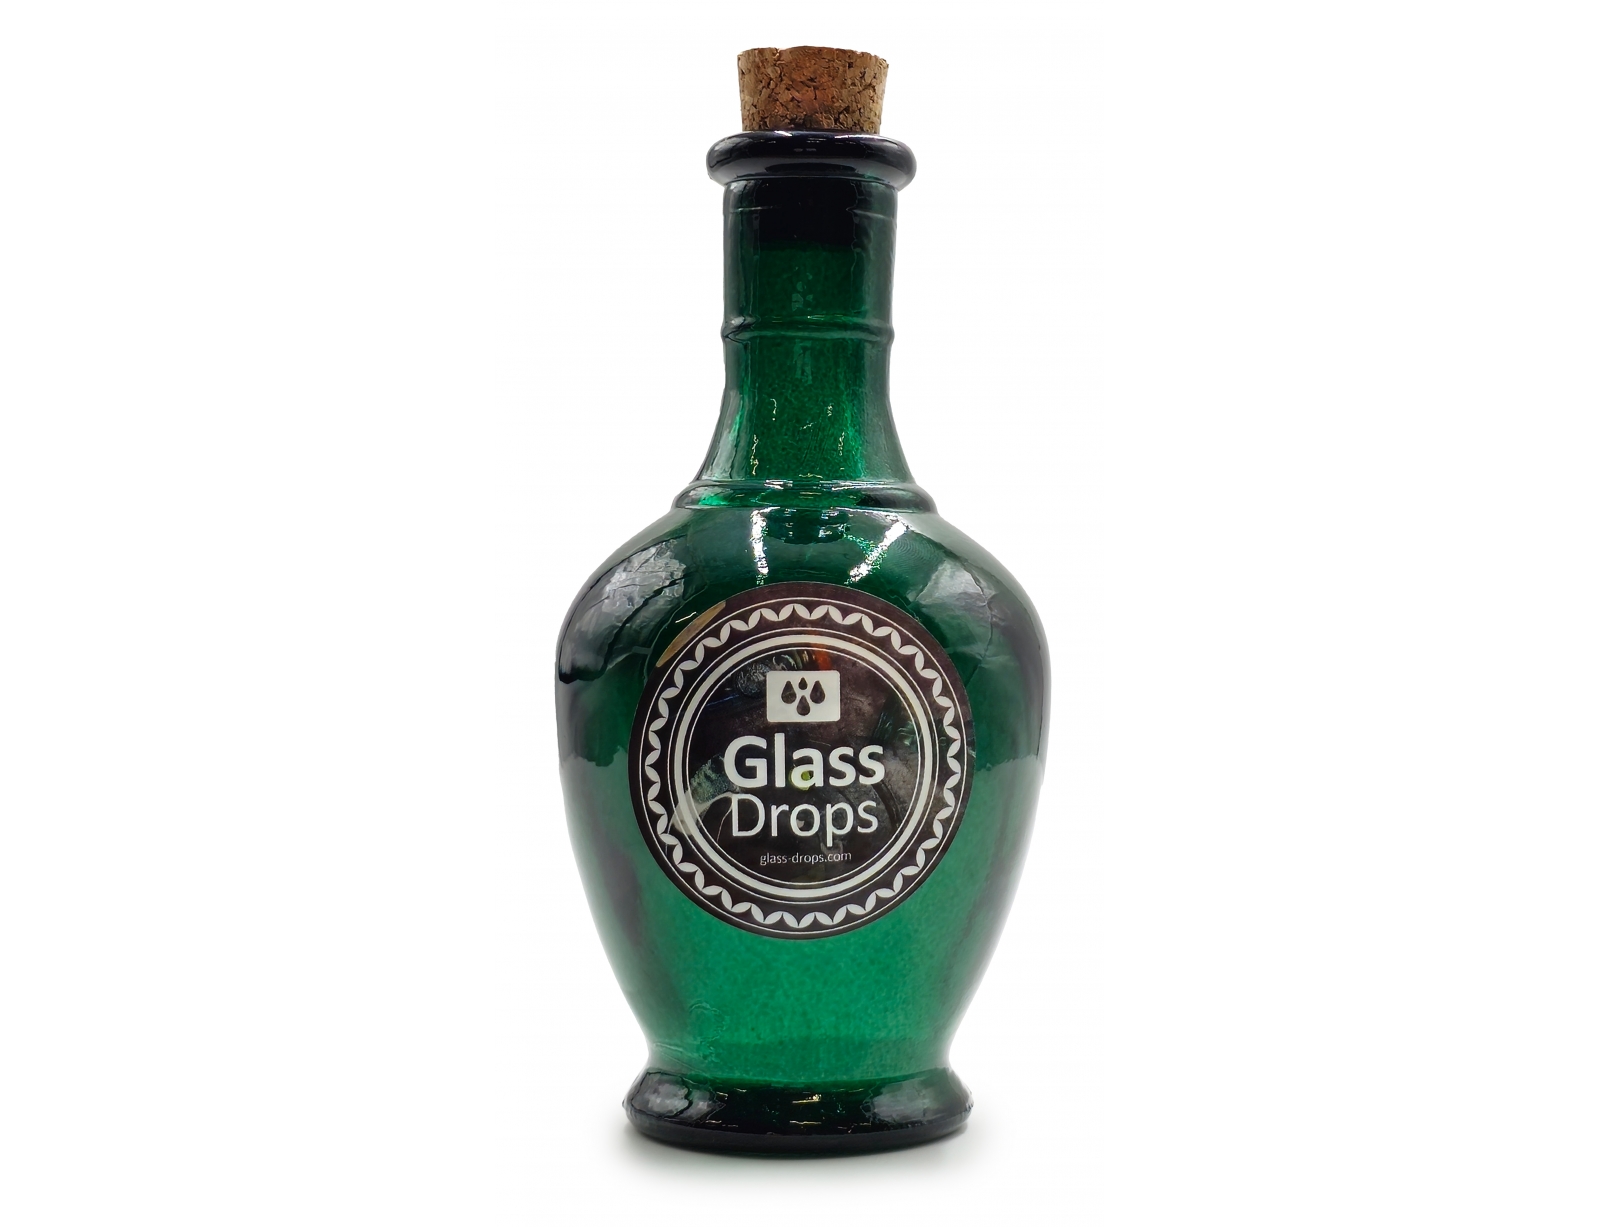 Εικόνα Διακοσμητικό Μπουκάλι με πώμα Glass Drops Andalucia (5620DB734) Aπό 100% ανακυκλωμένο γυαλί, Xωρητικότητας 250ml, Διαστάσεων Ø 8 x Υ 15 cm, Albahaca